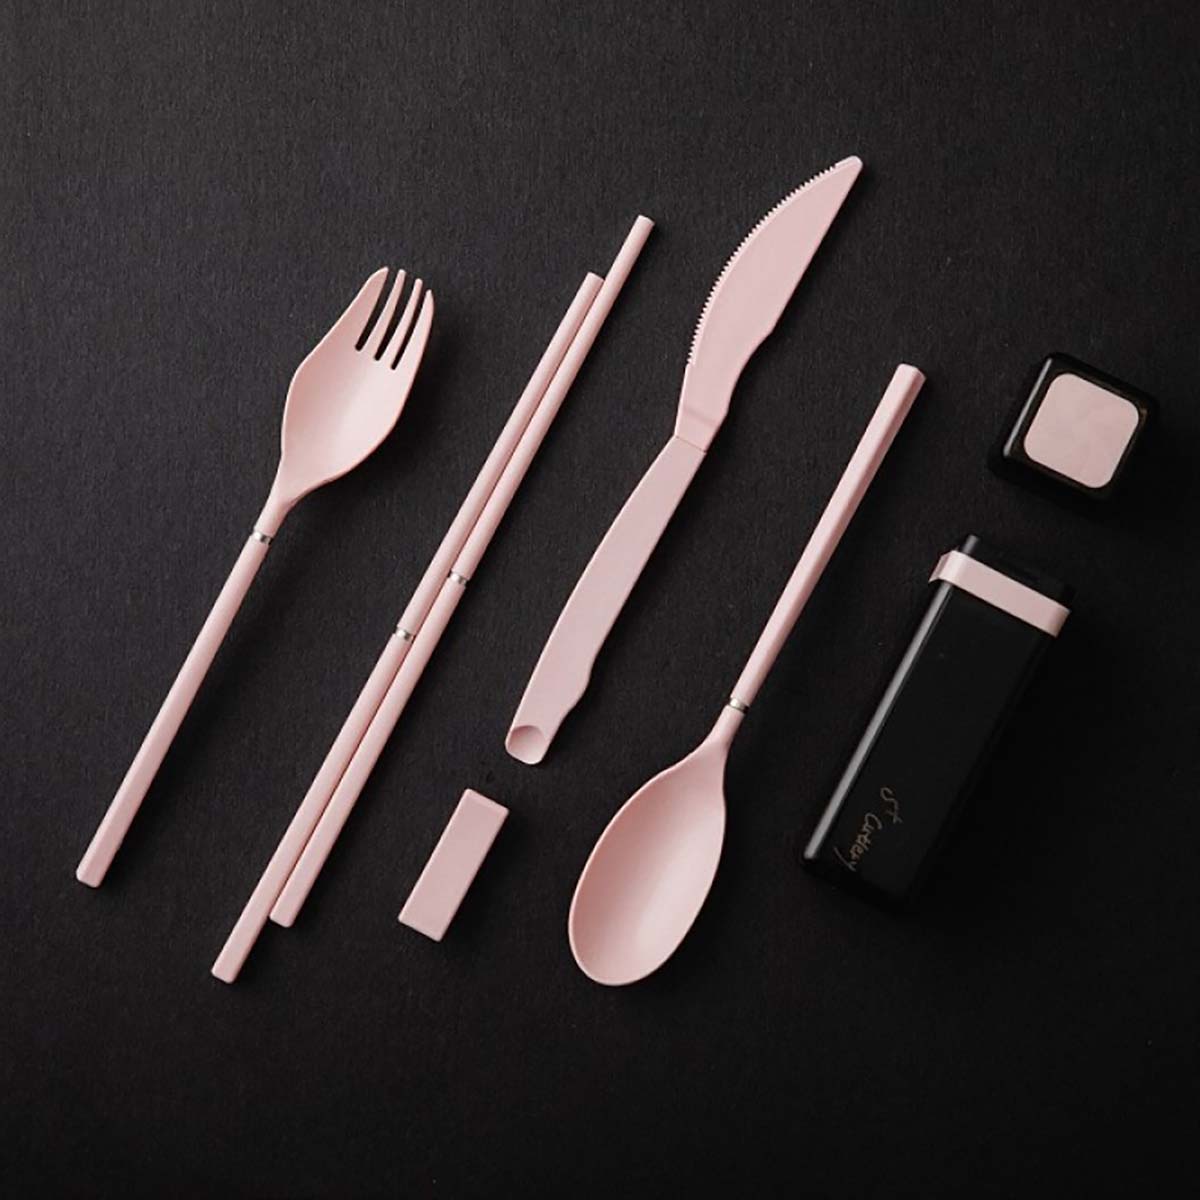 S+ Cutlery 歐應環保餐具